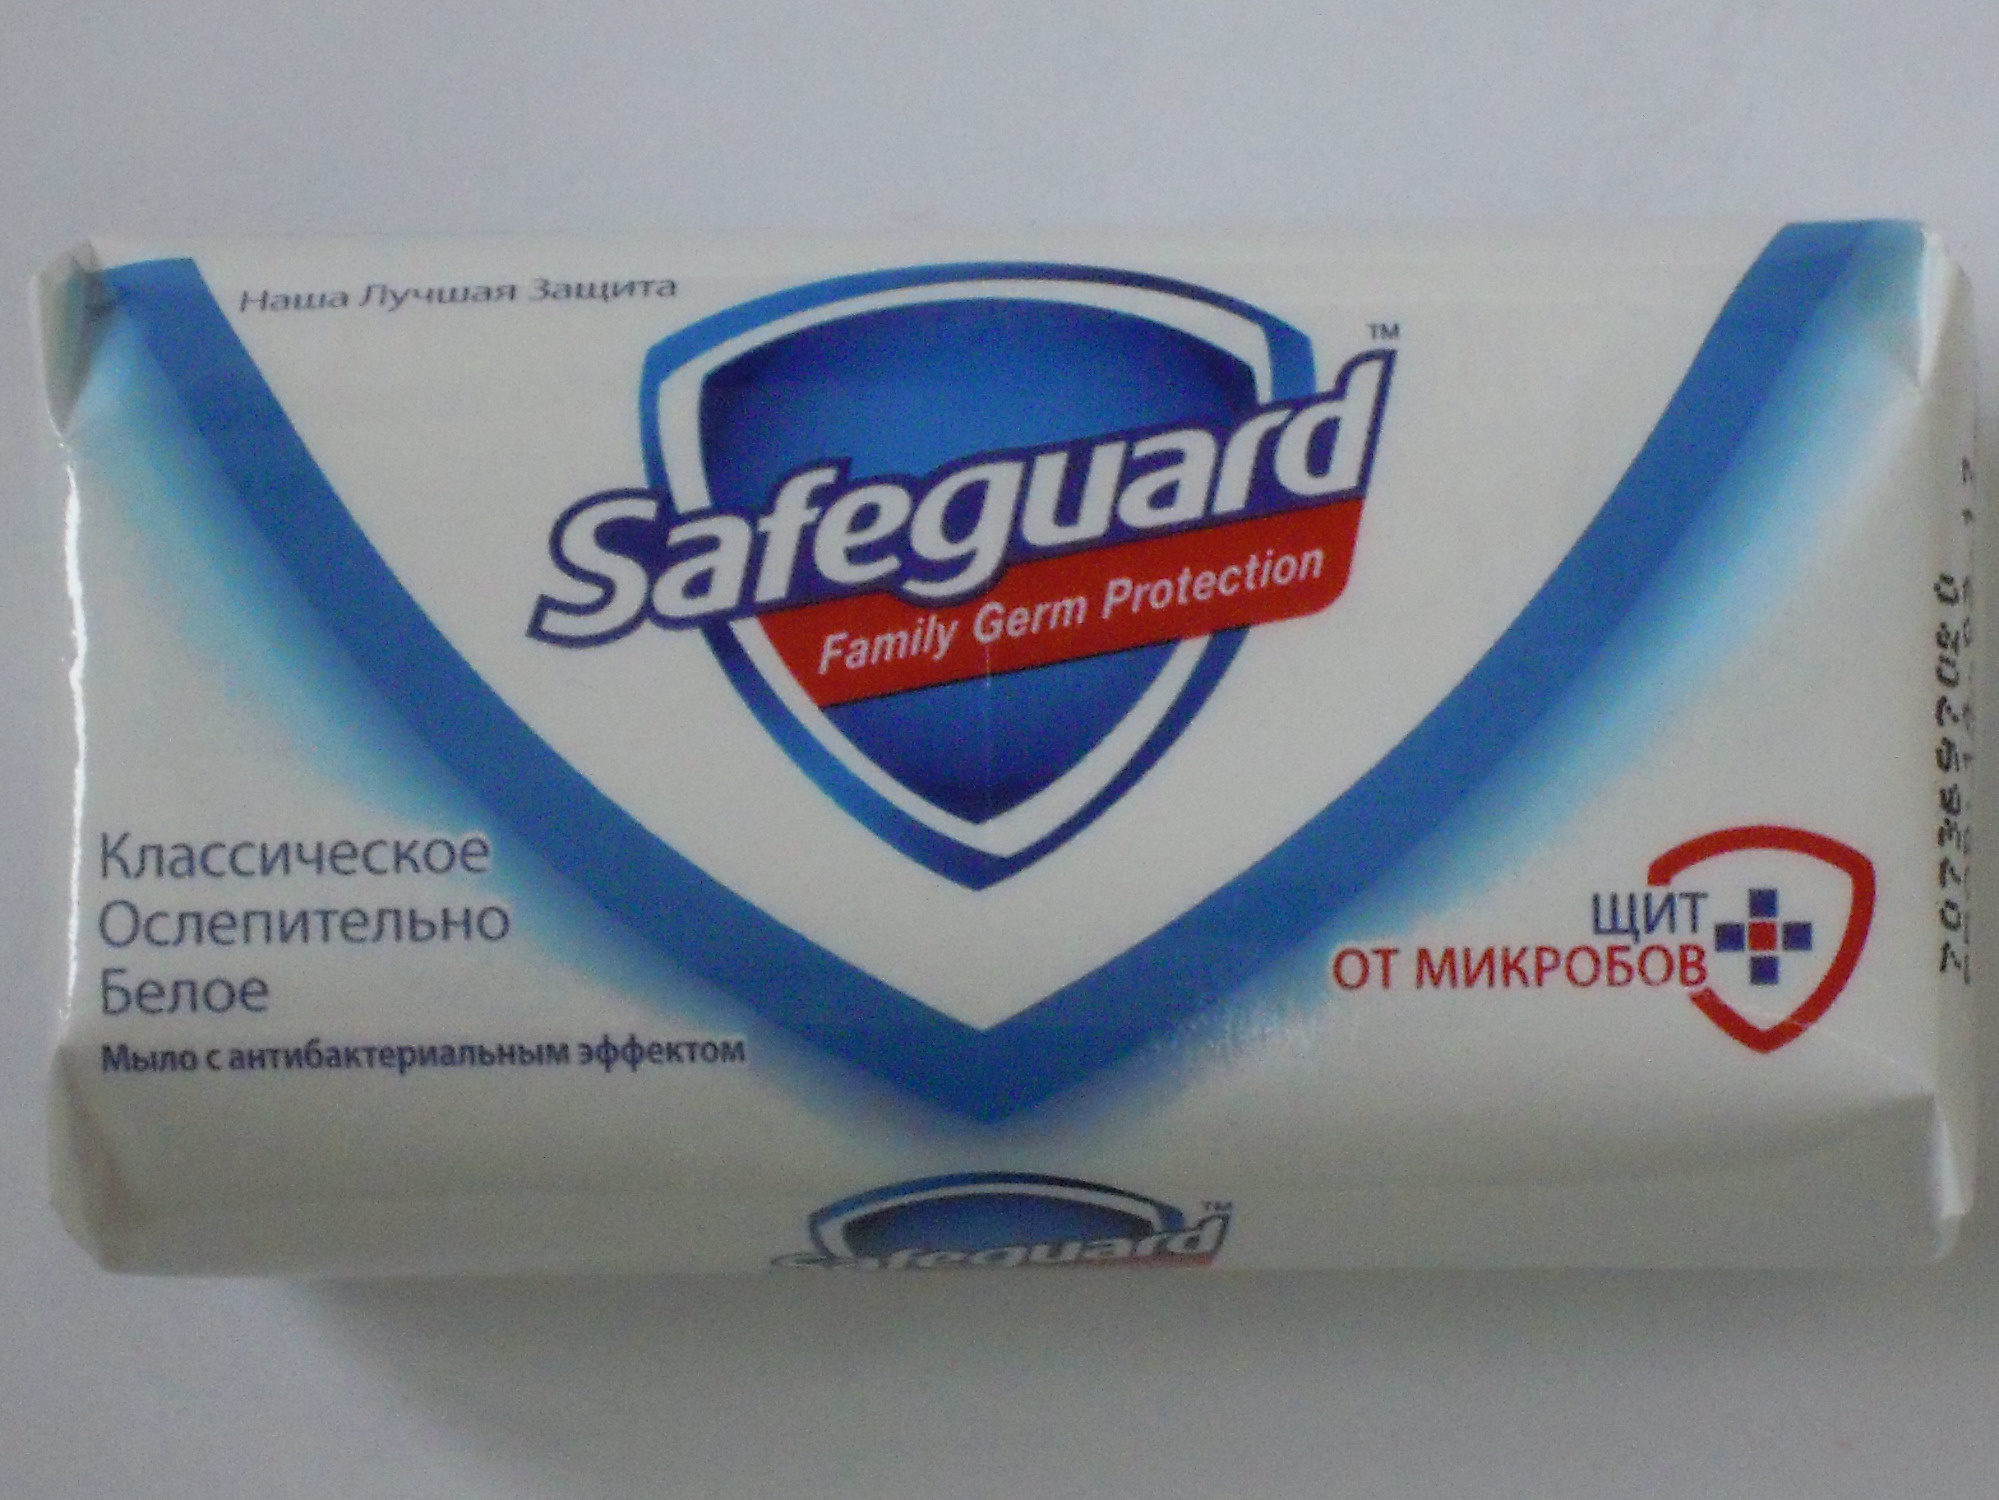 Safeguard Классическое Ослепительно Белое - Produit - ru